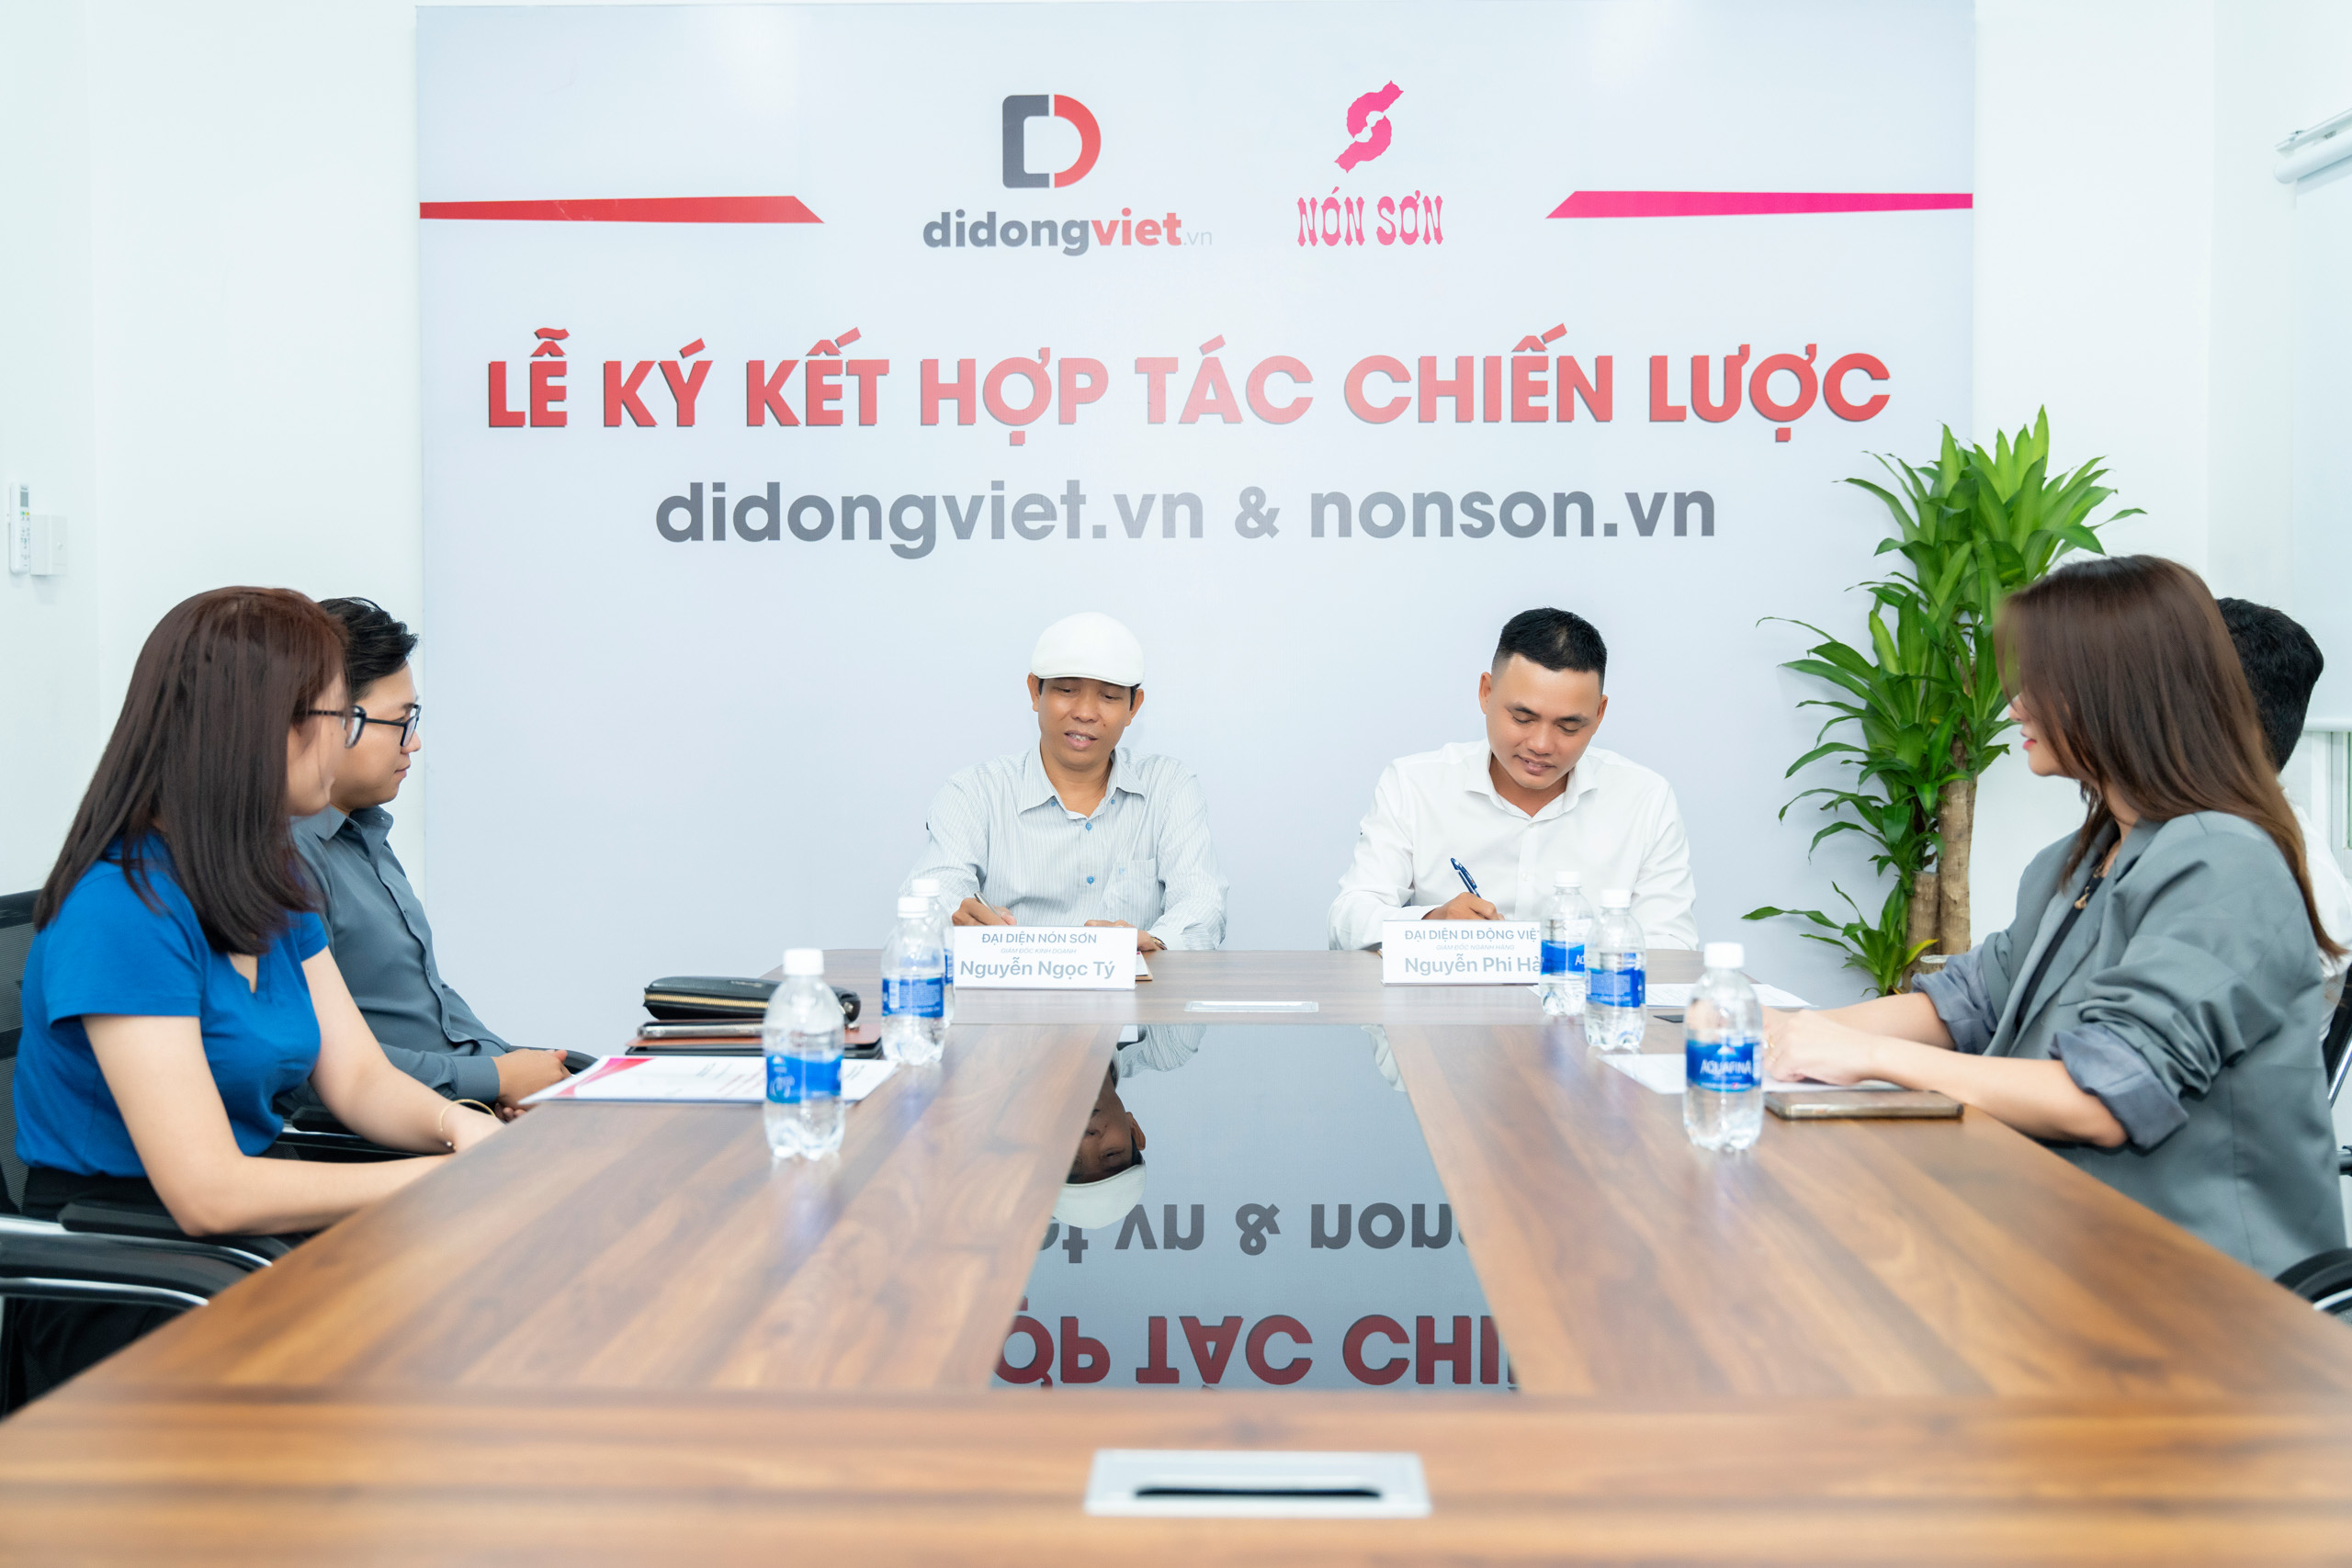 Di Động Việt ký kết hợp tác với Nón Sơn nhằm chung tay bảo vệ sự an toàn của khách hàng